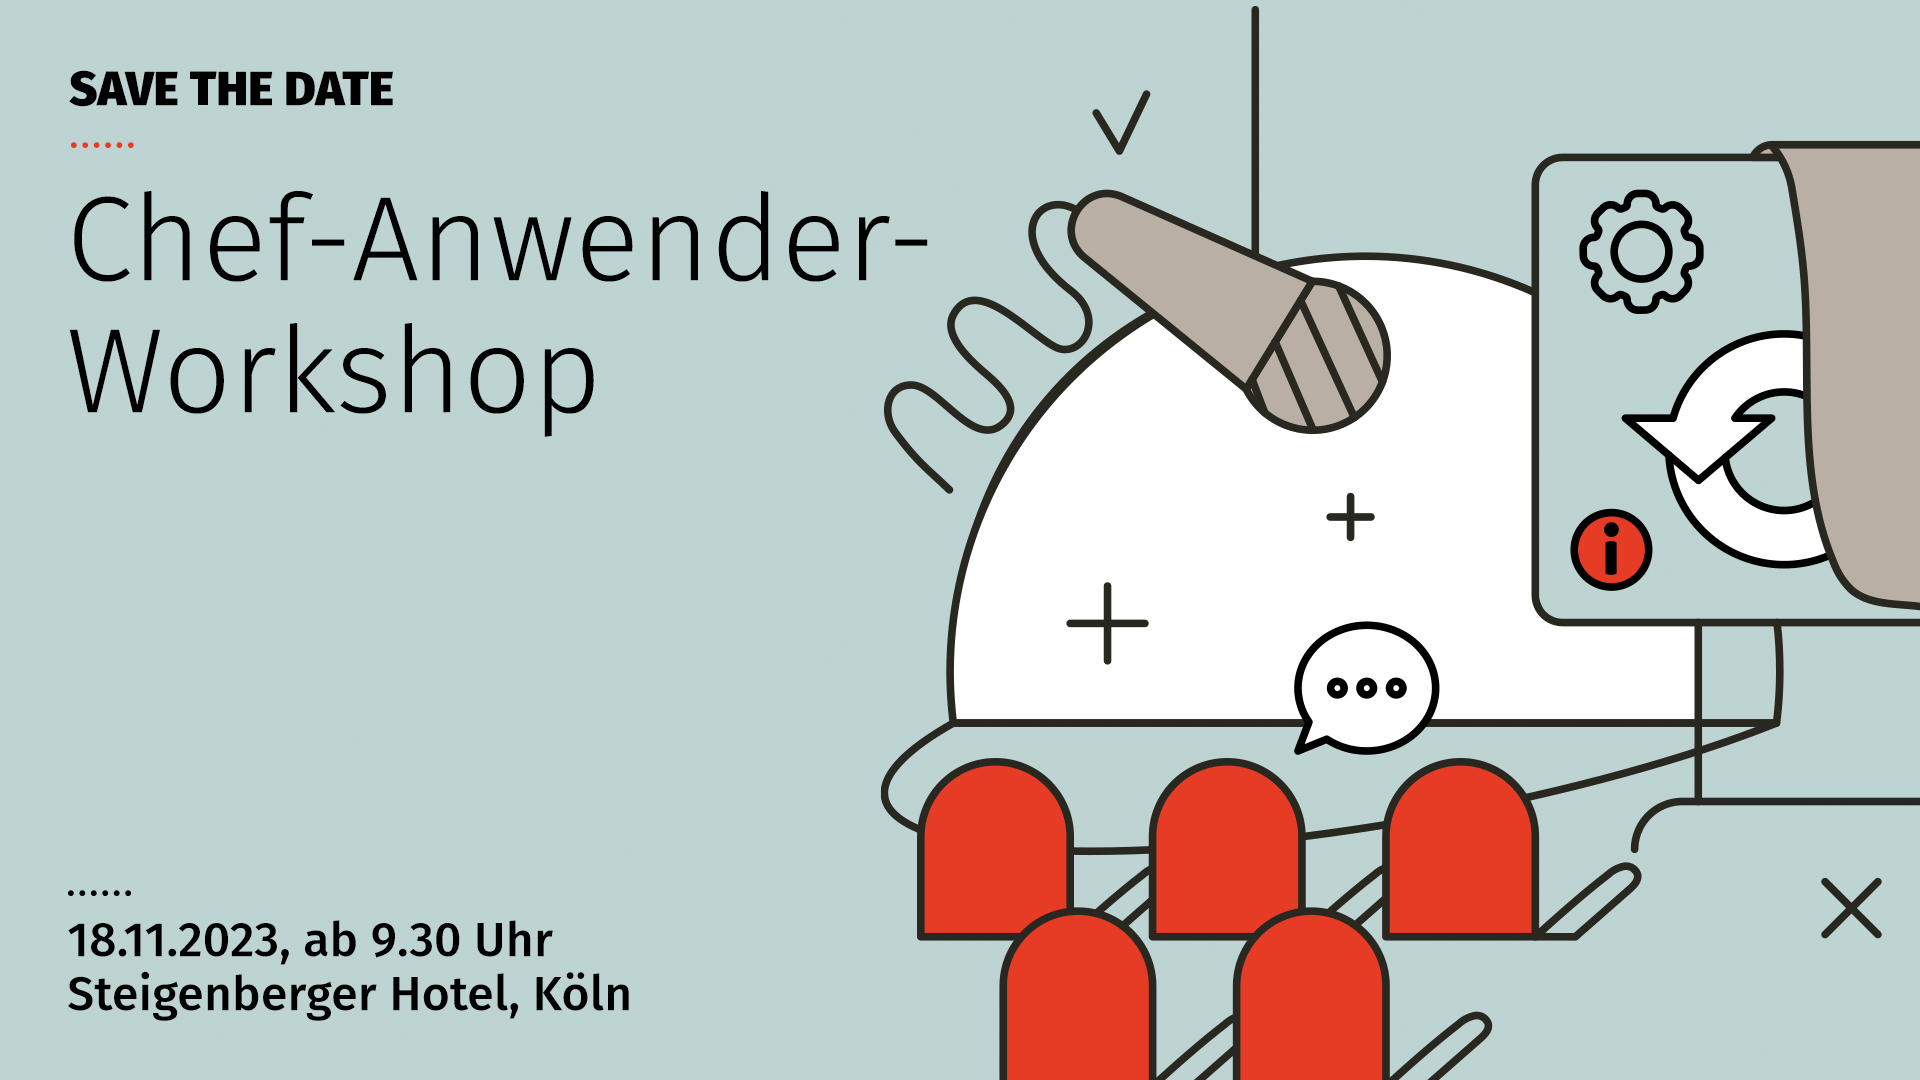 ifa systems AG, Chef-Anwender-Workshop 2023 in Köln, Augeninformationssysteme und Praxissoftware